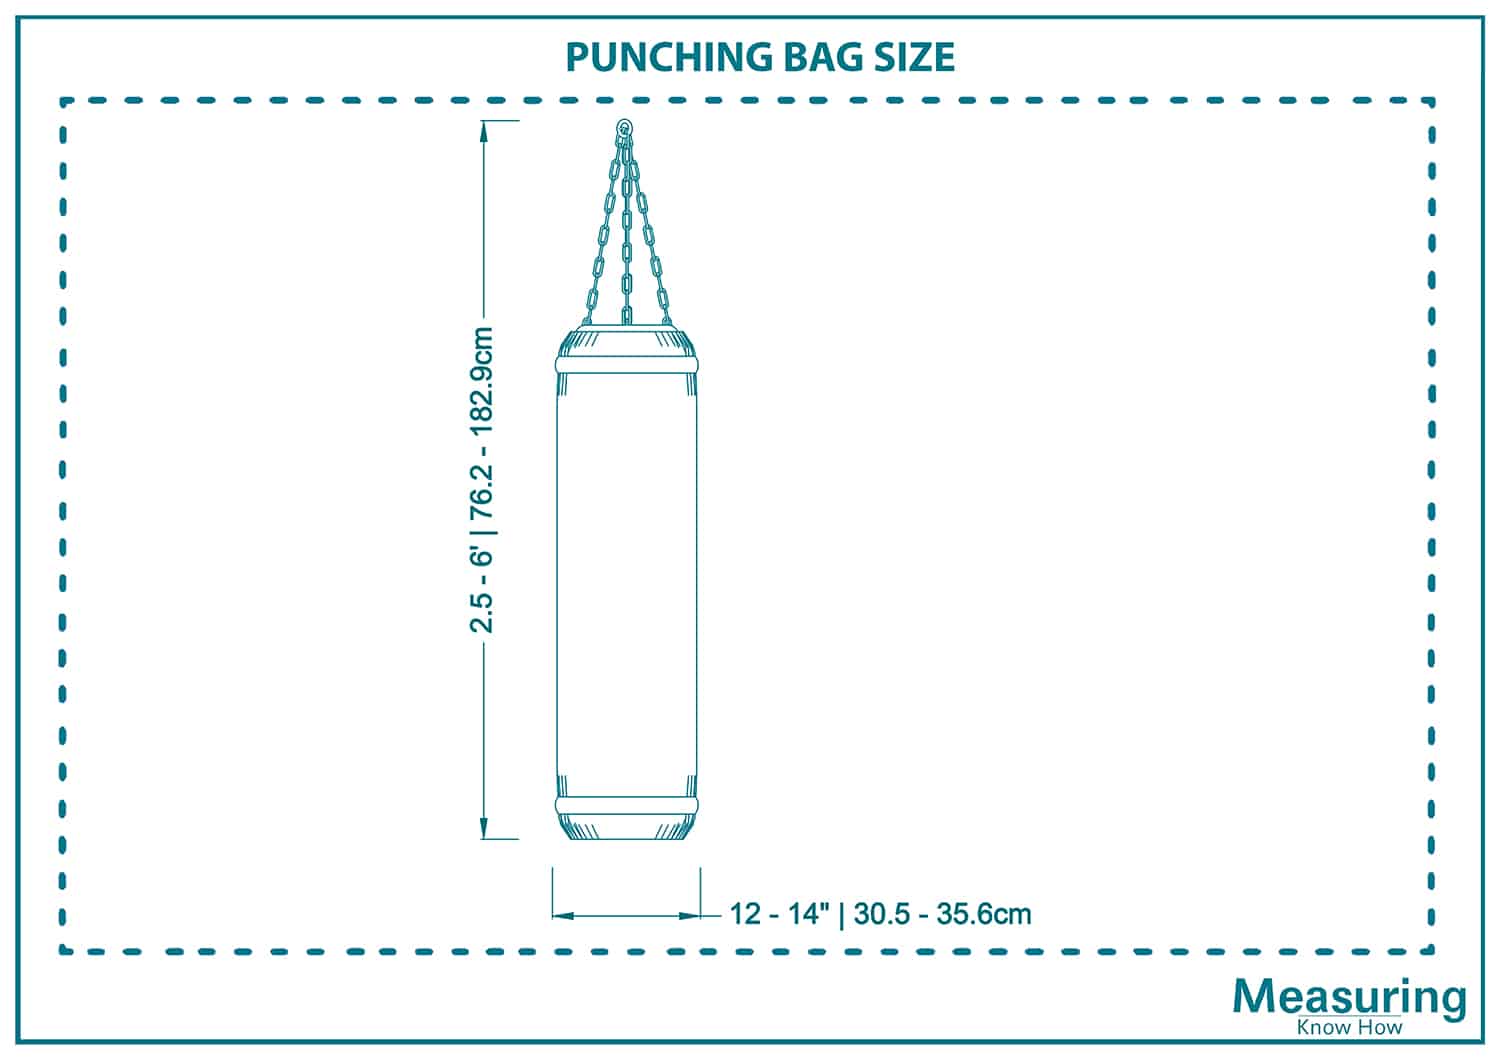 Punching bag size